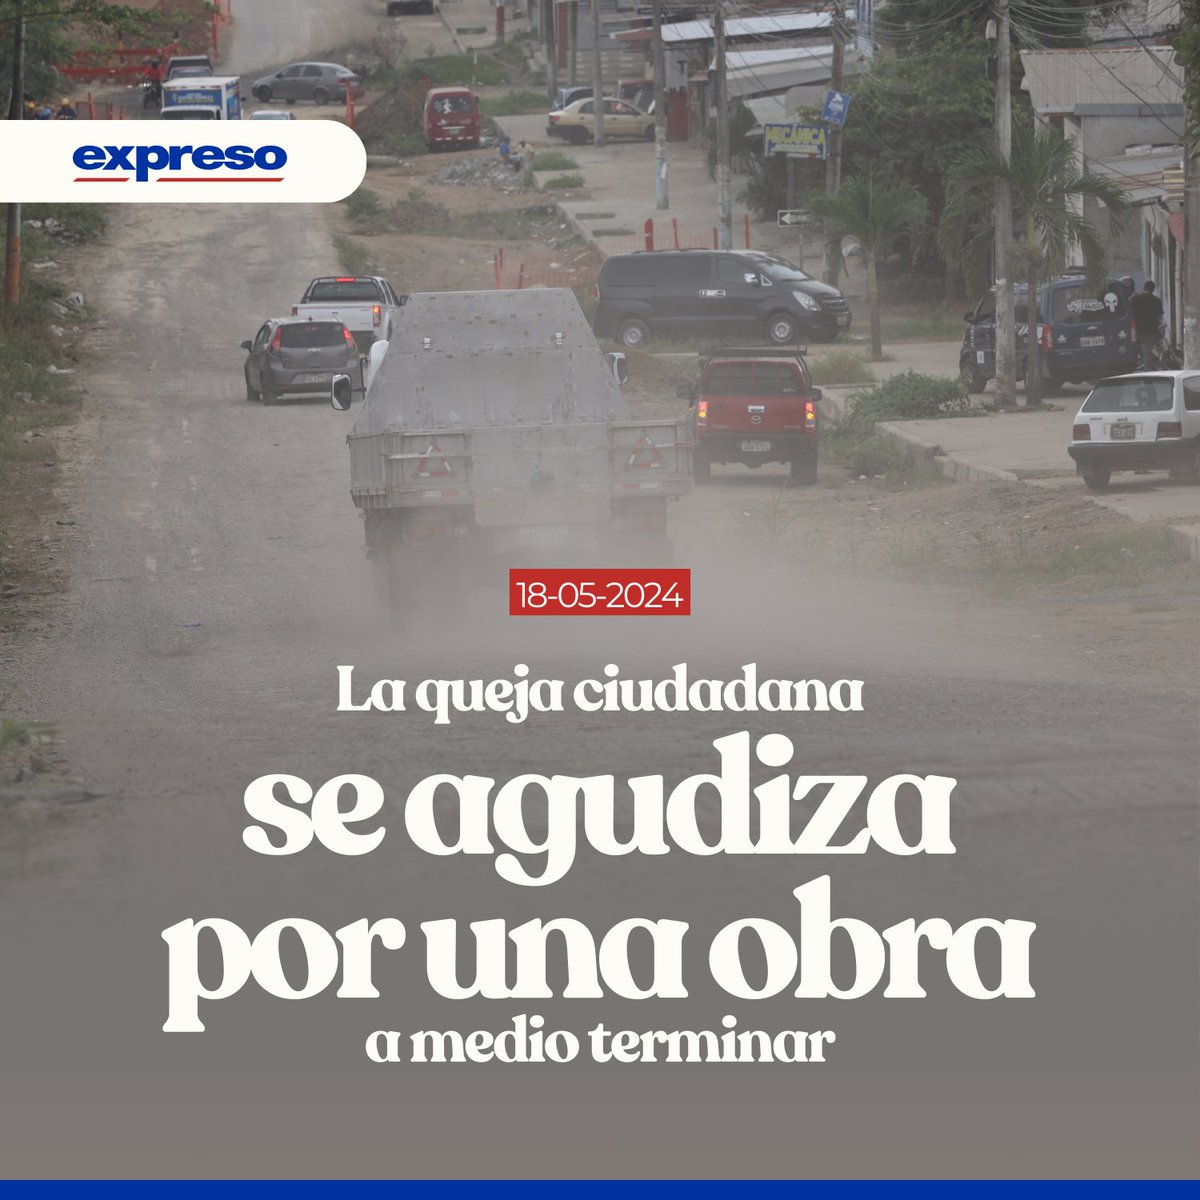 La vía que conecta a la Francisco de Orellana con la vía a Daule (norte de Guayaquil) desde hace un año está intervenida. El alcalde Aquiles Álvarez dice que no ha podido avanzar por falta de acuerdos. Los detalles 👉bit.ly/3QSDEkd